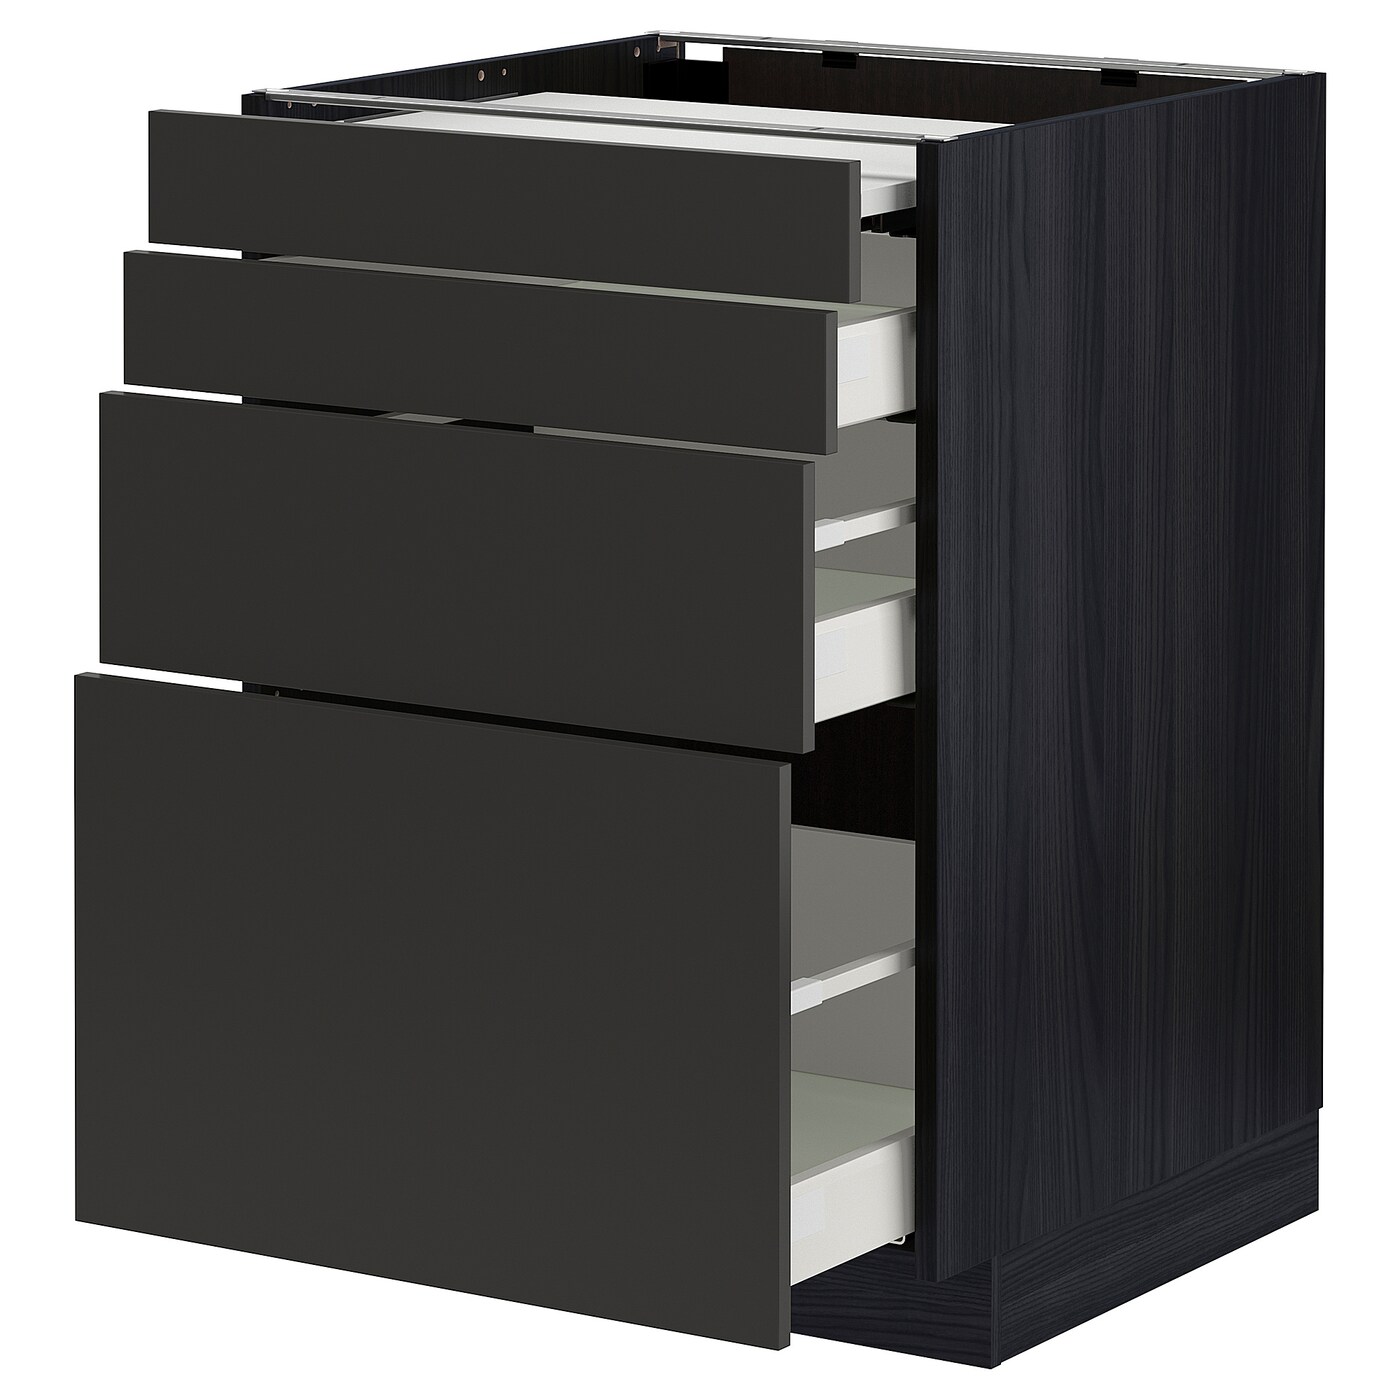 Напольный шкаф - METOD / MAXIMERA IKEA/ МЕТОД/ МАКСИМЕРА ИКЕА,  88х60 см, черный/коричневый